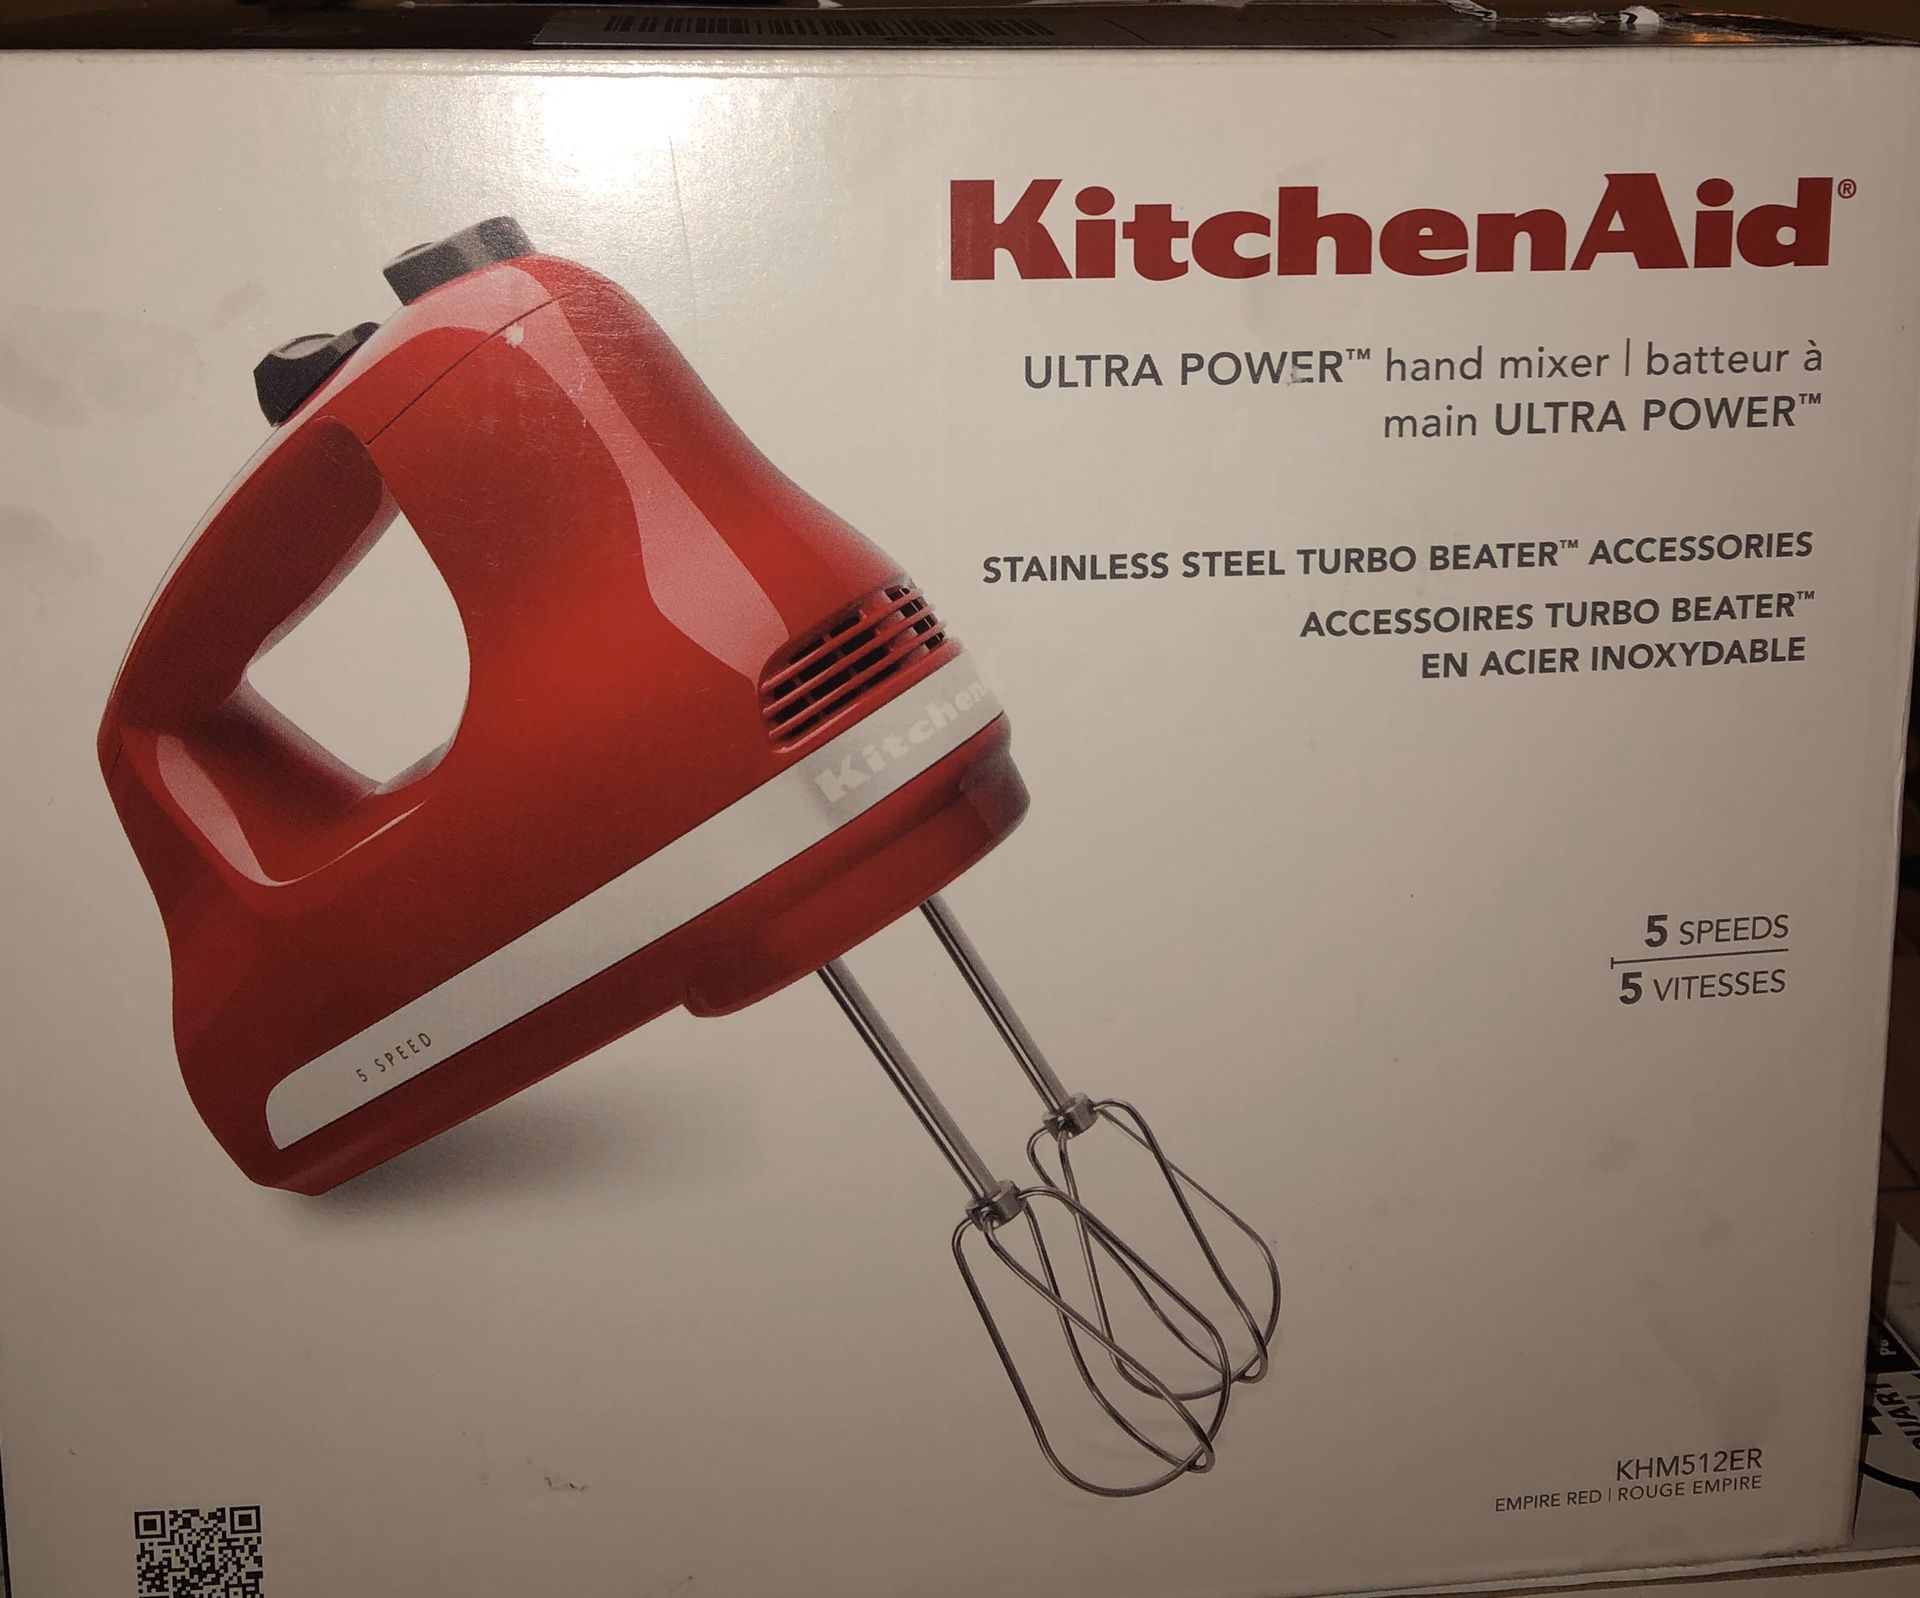 Kitchen aid hand mixer